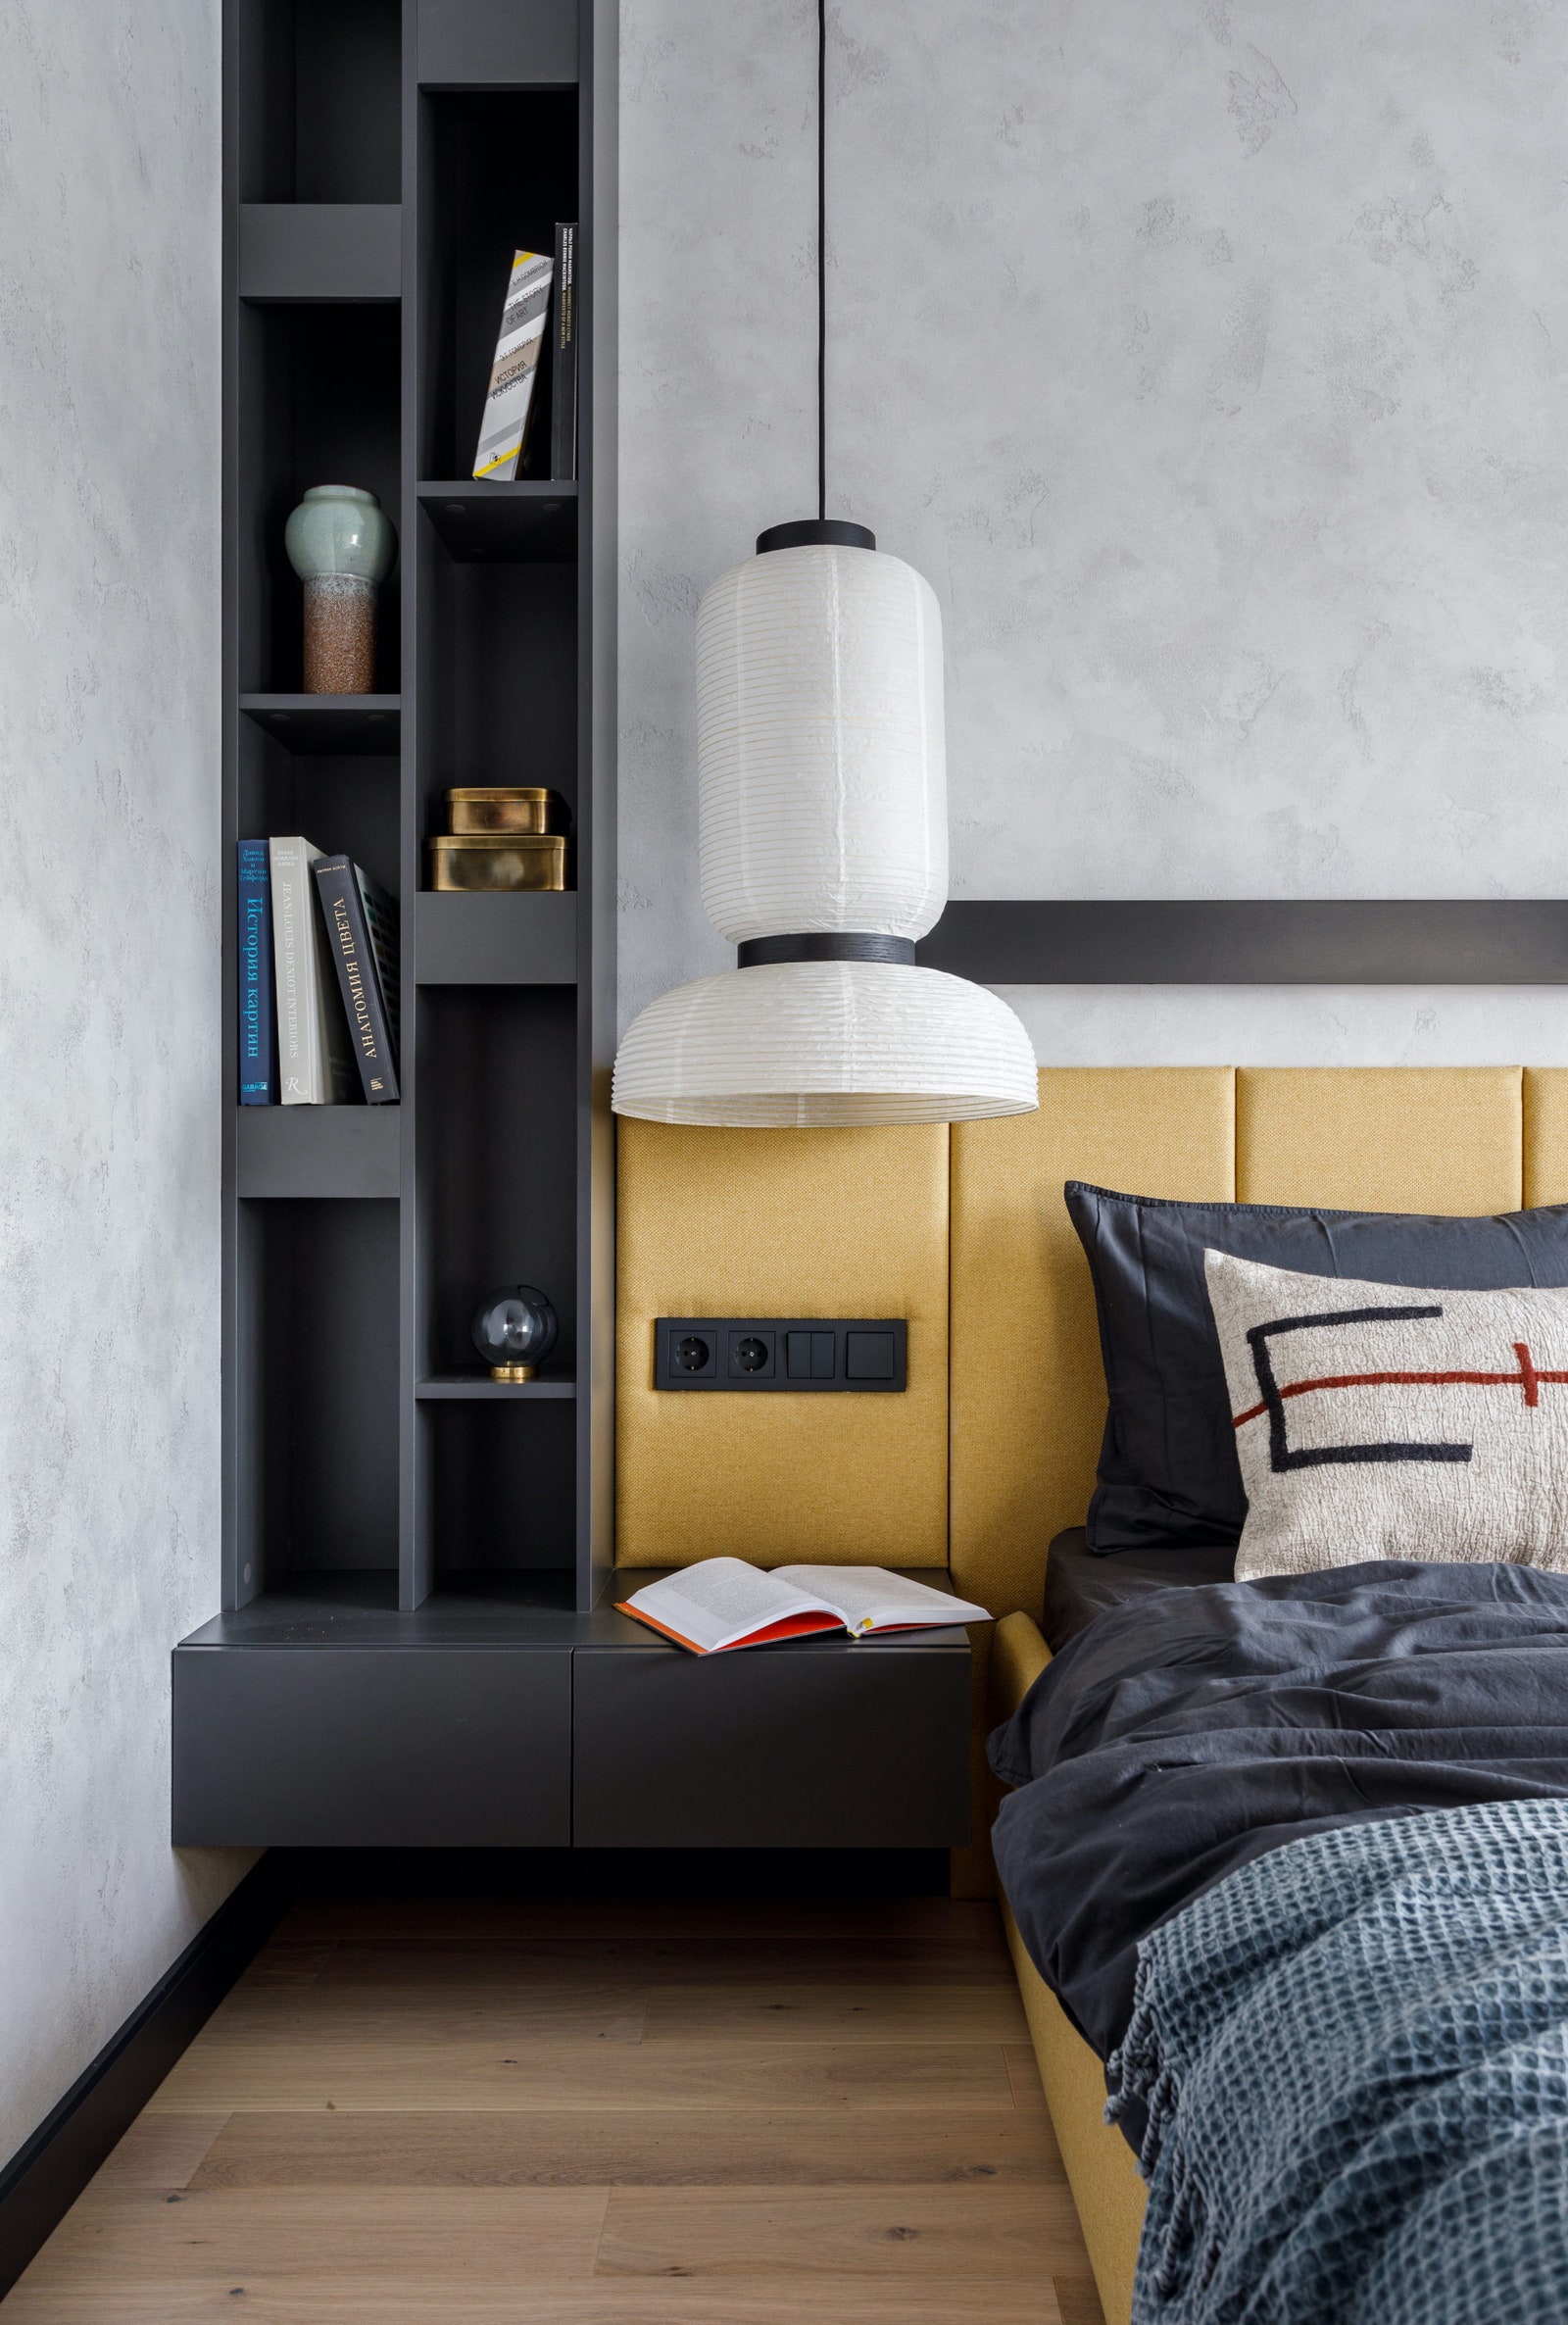 Проект Smart Interior Design — квартира 50 м². Фрагмент спальни. Кровать сделана на заказ Jamni над изголовьем...